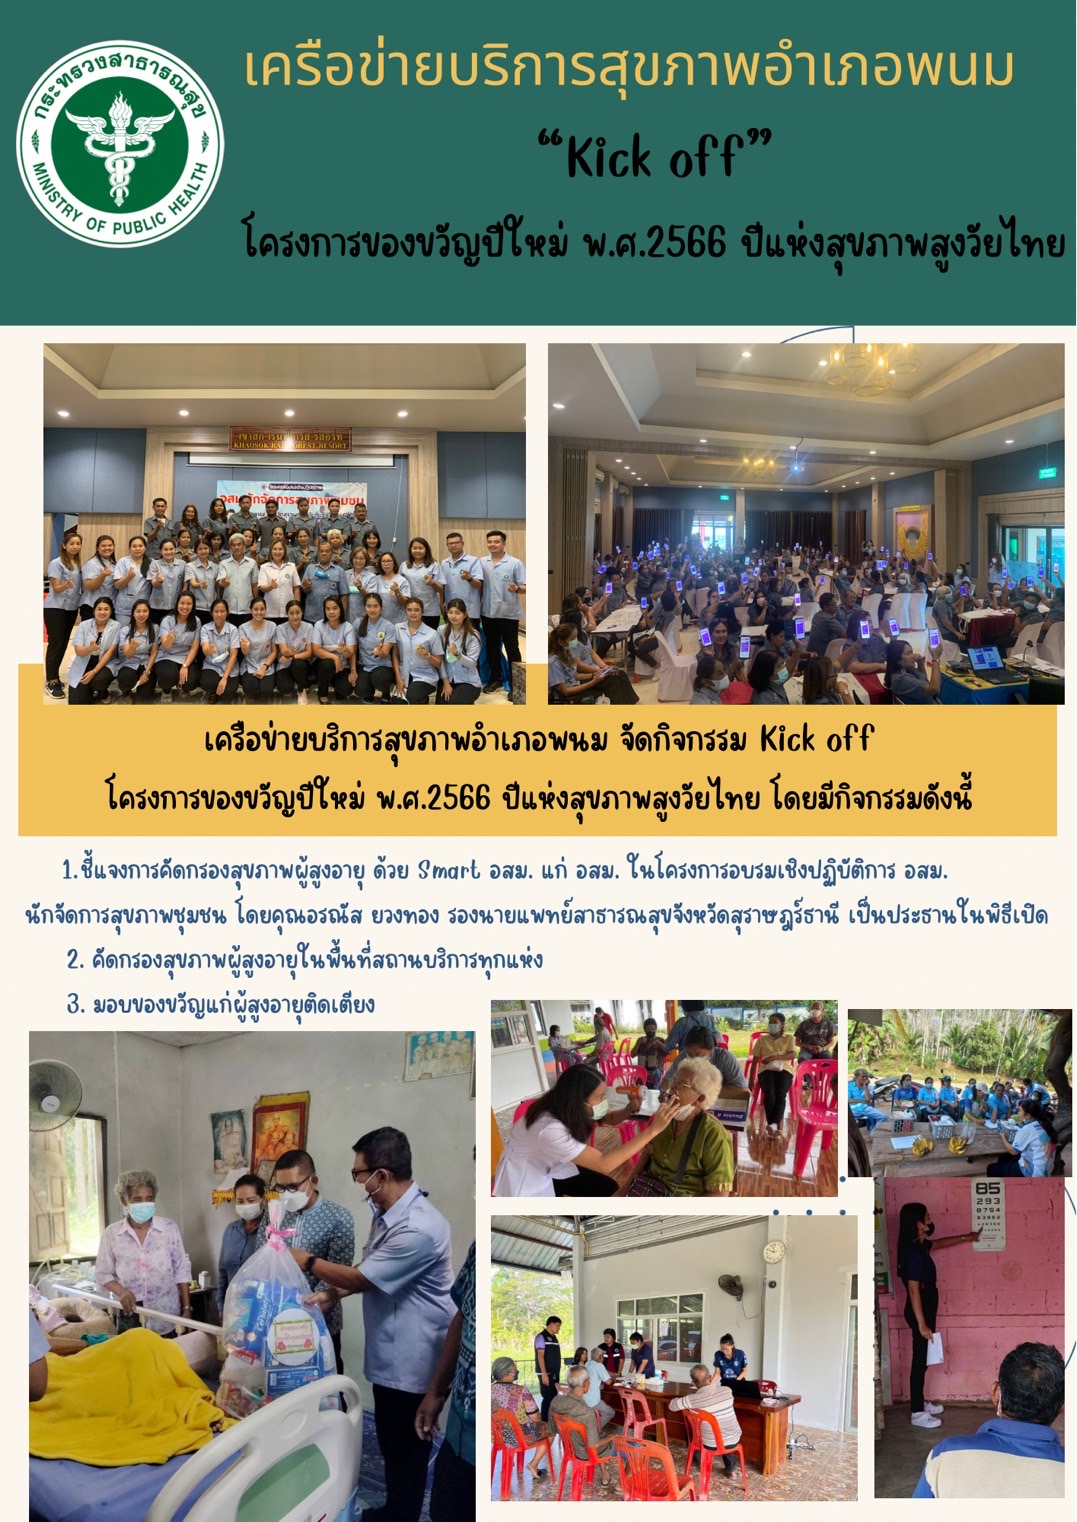 เครือข่ายบริการสุขภาพอำเภอพนม จัดกิจกรรม Kick off โครงการของขวัญปีใหม่ พ.ศ.2566 ปีแห่งสุขภาพสูงวัยไทย